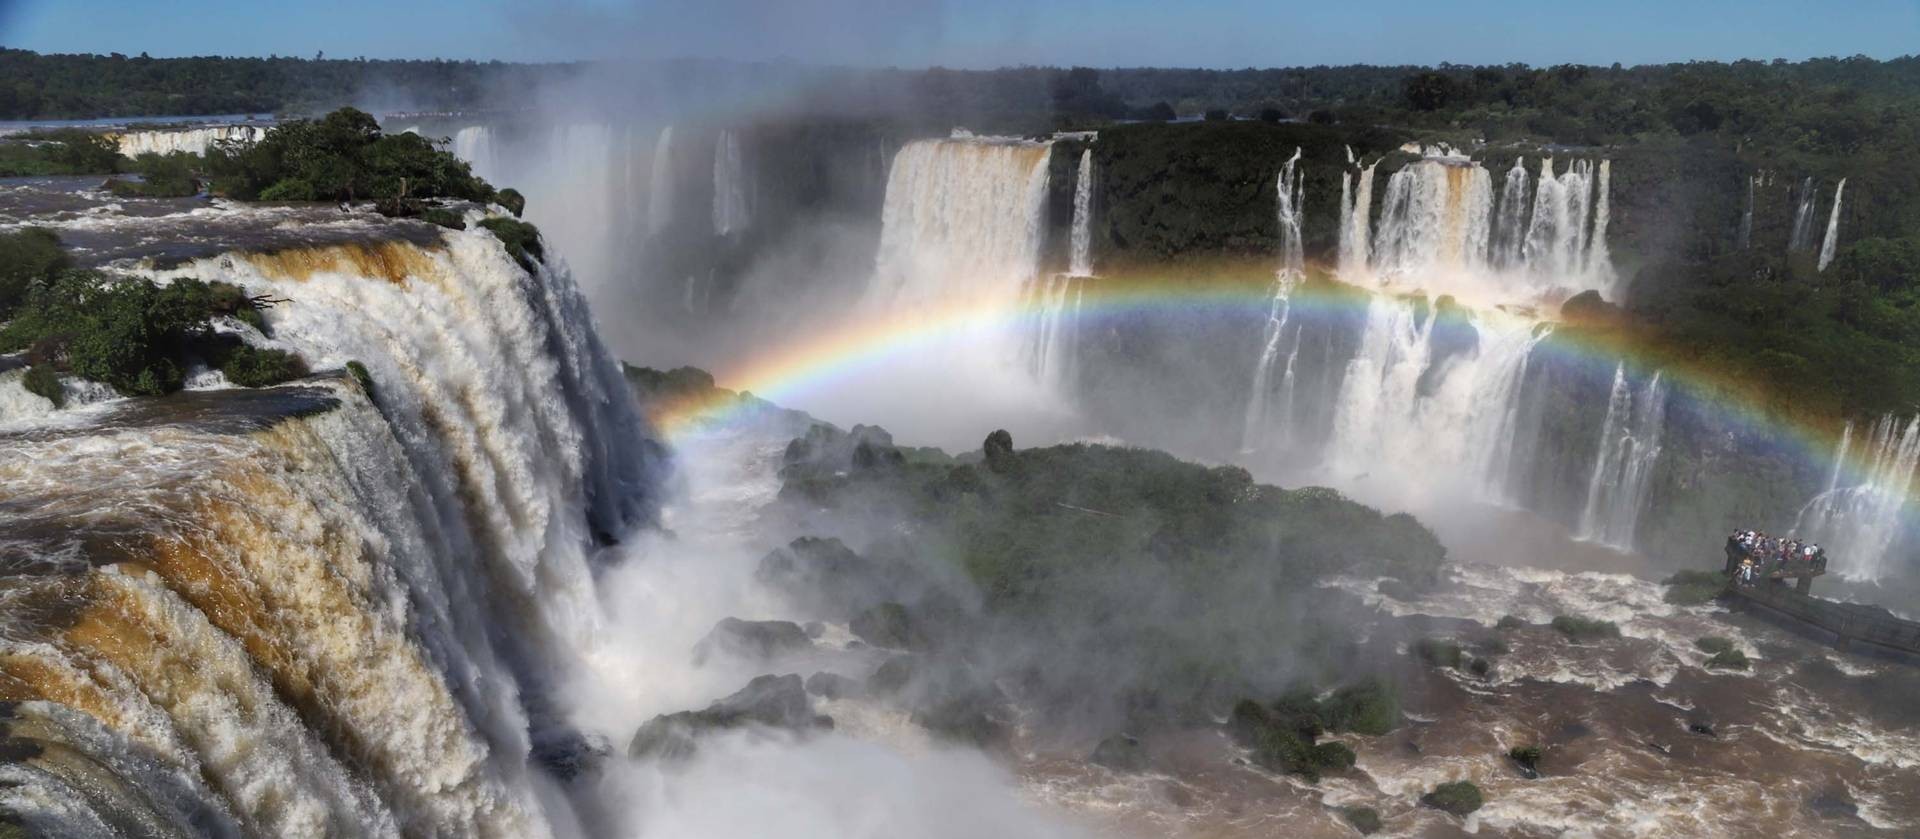 Cataratas do Iguaçu registram a maior vazão de água desde fevereiro